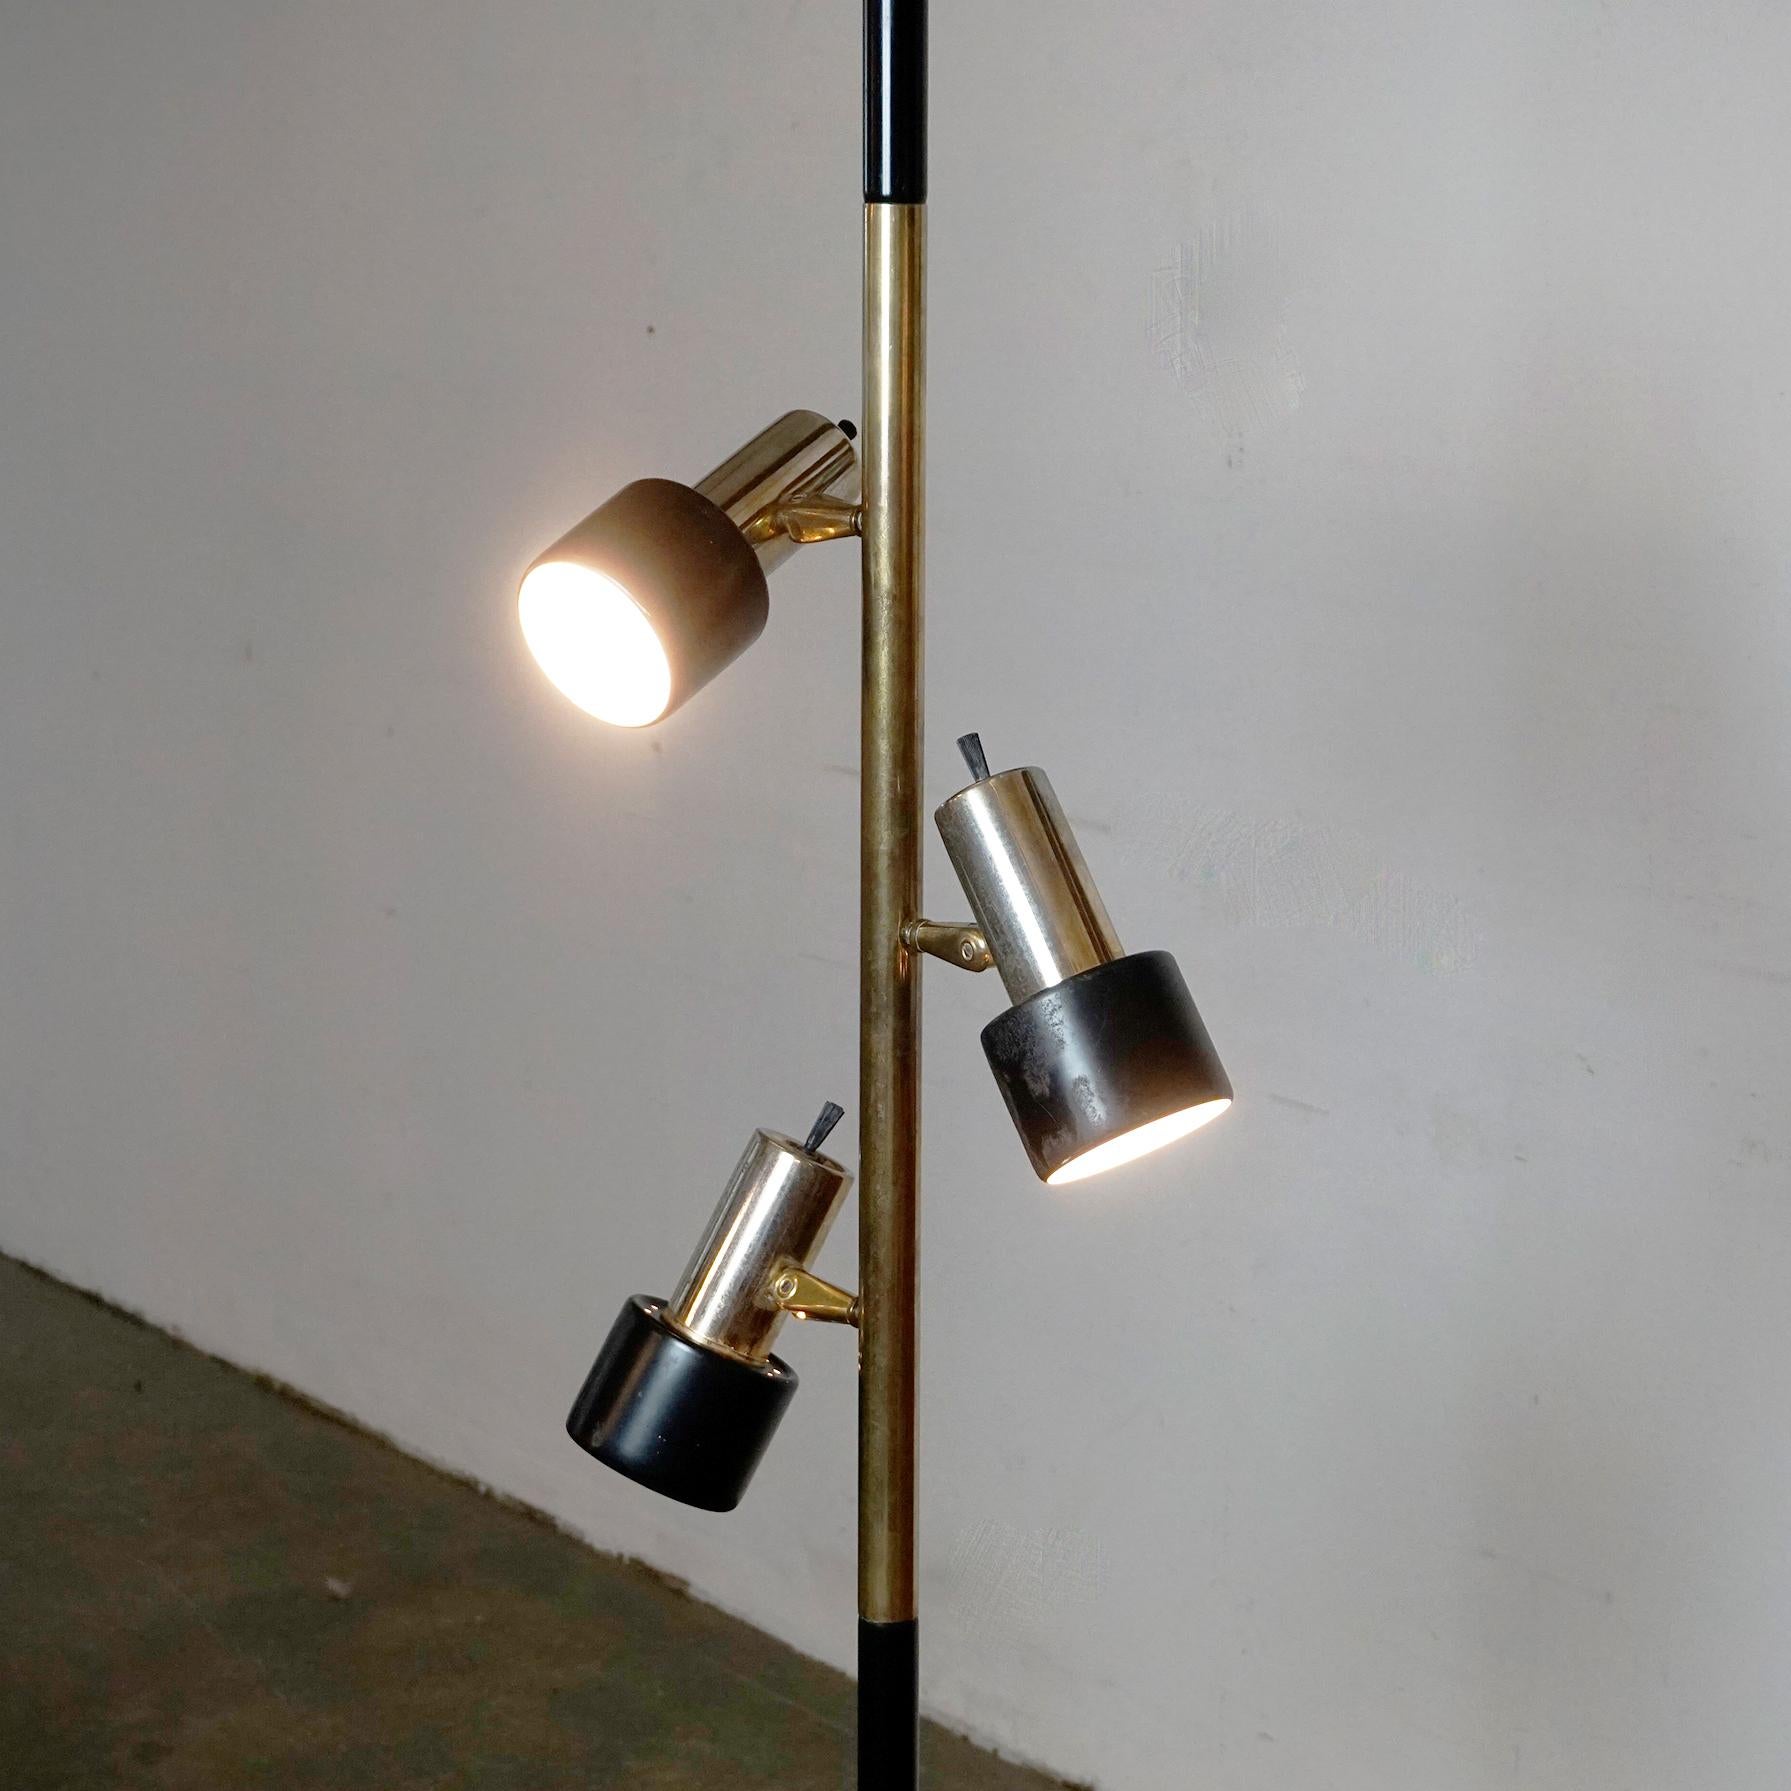 Cette belle et rare lampe à trois spots réglables a été conçue et fabriquée dans les années 1960. Elle est très proche des lampes produites par Hala Zeist, Pays-Bas, dans les années 1960. 
Cette lampe doit être collée entre le sol et le plafond,